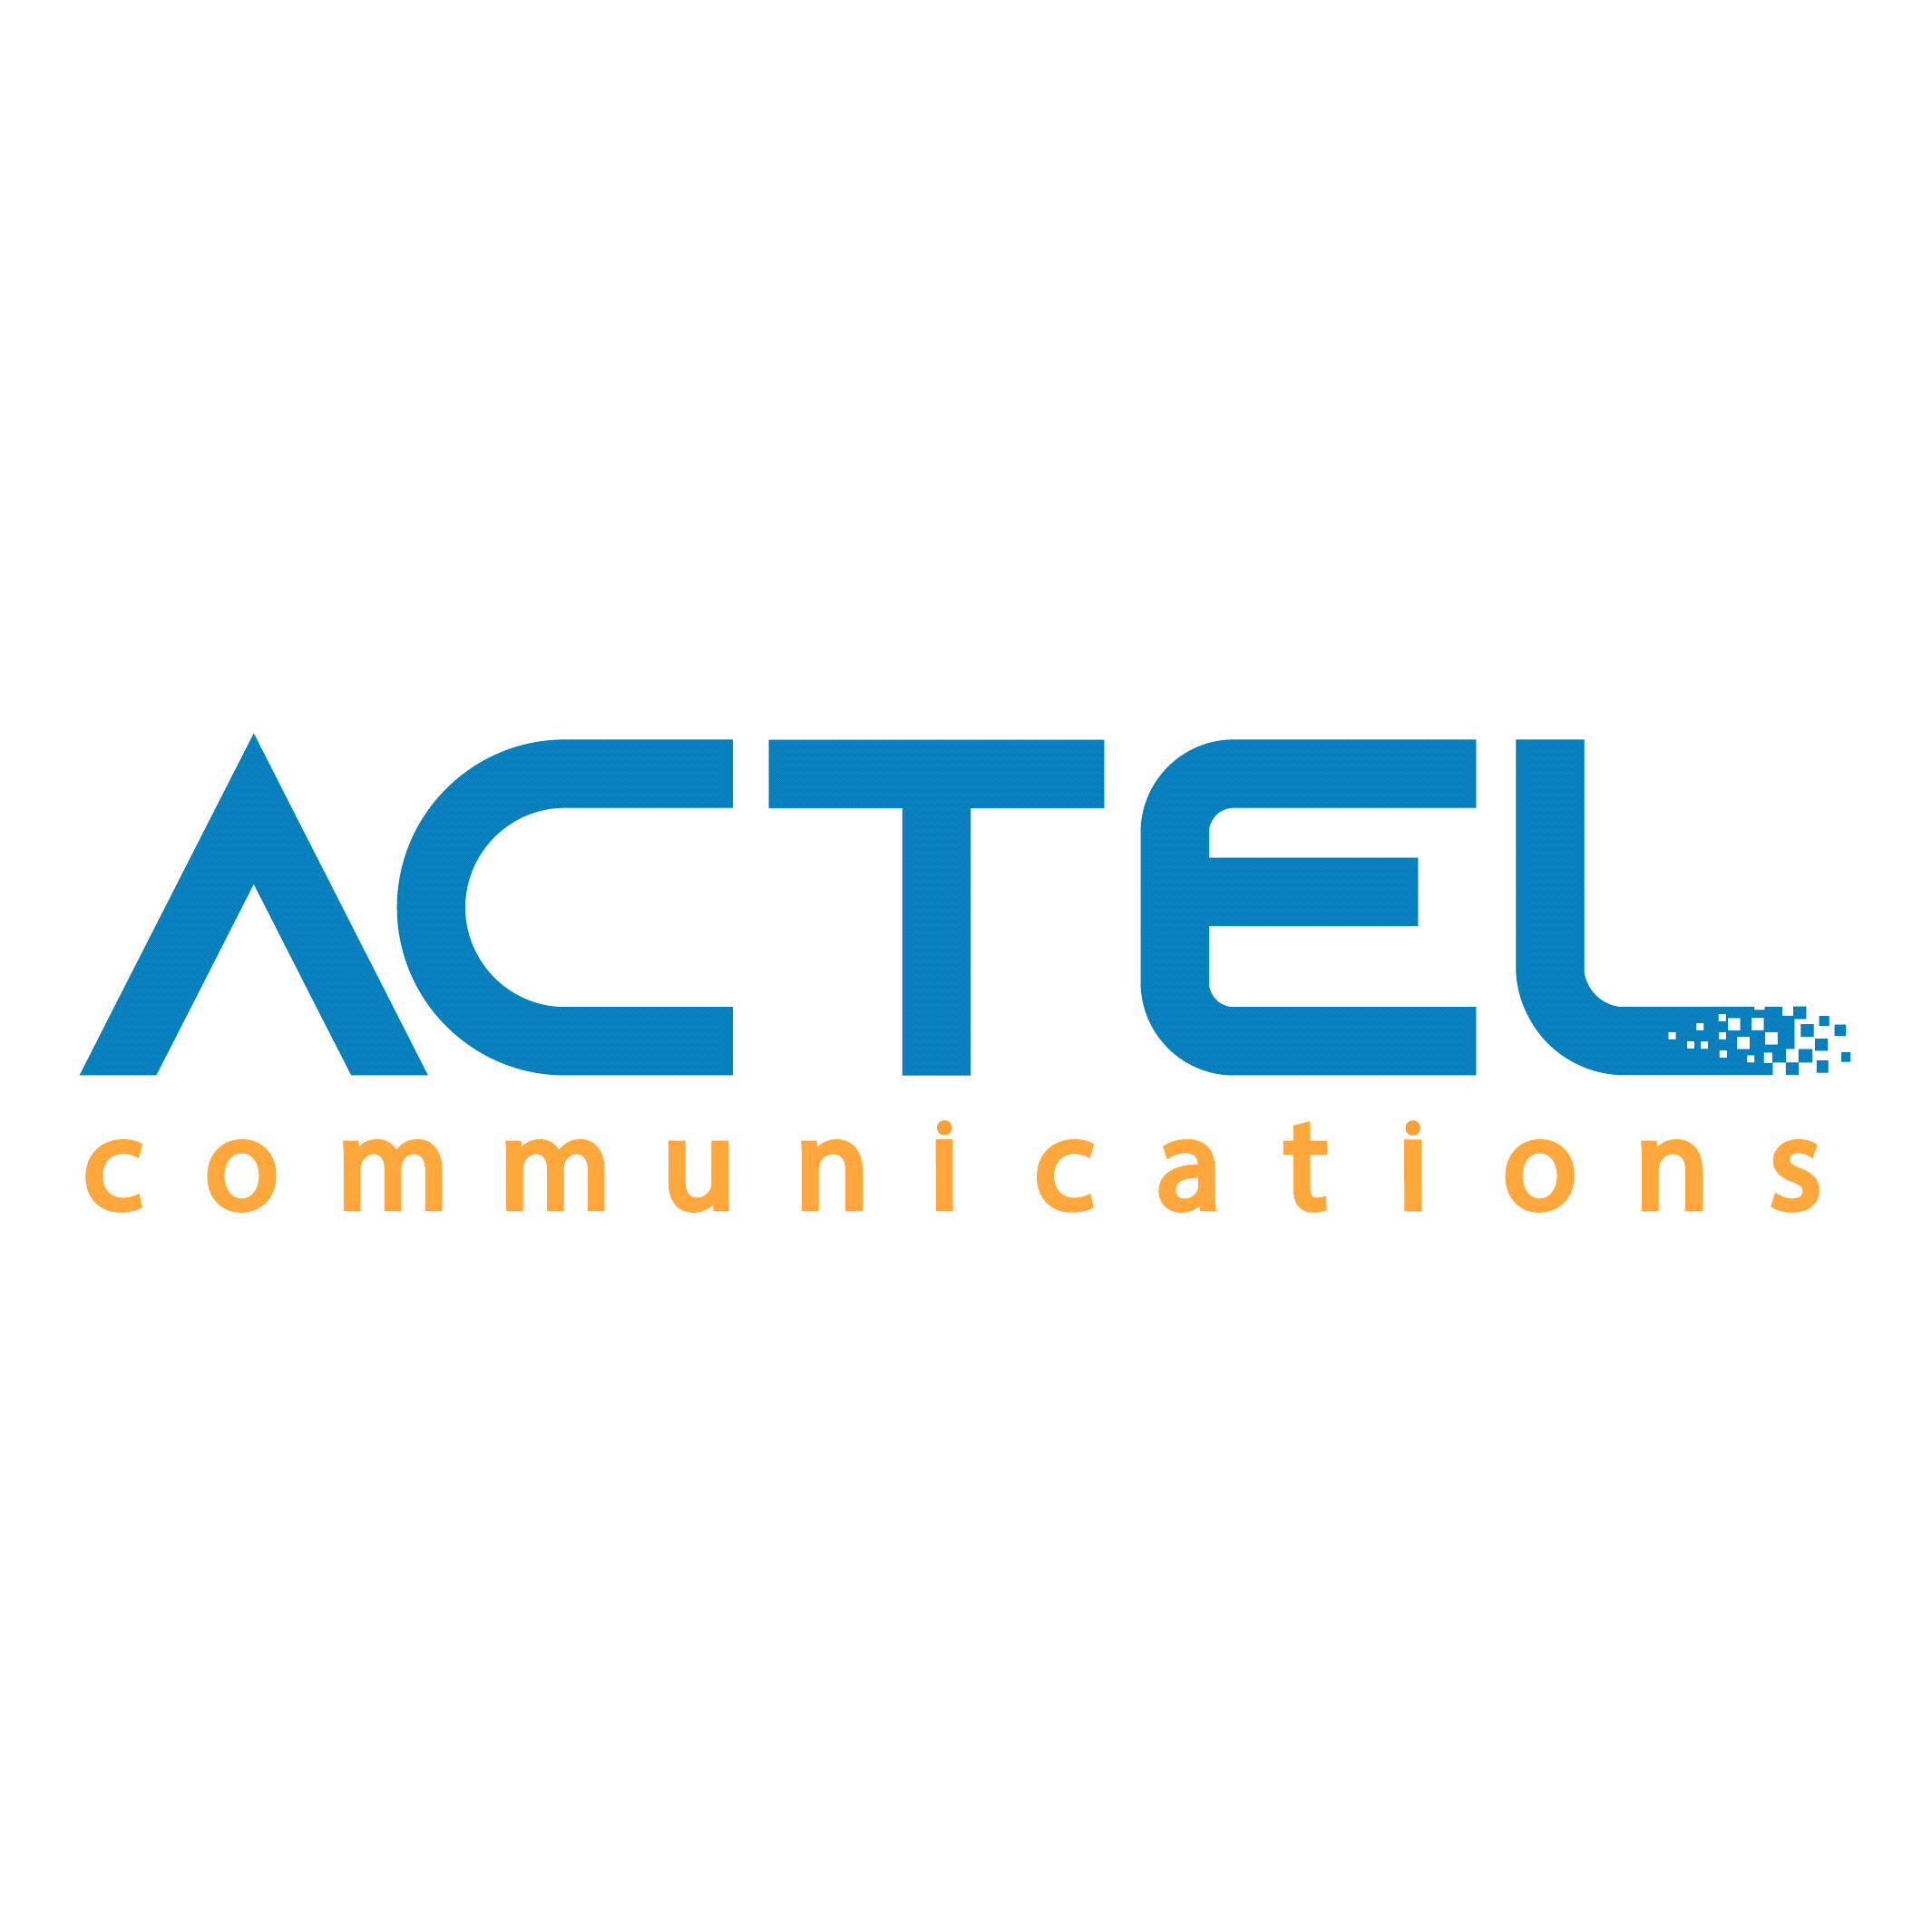 ACTEL Communications S.A.E